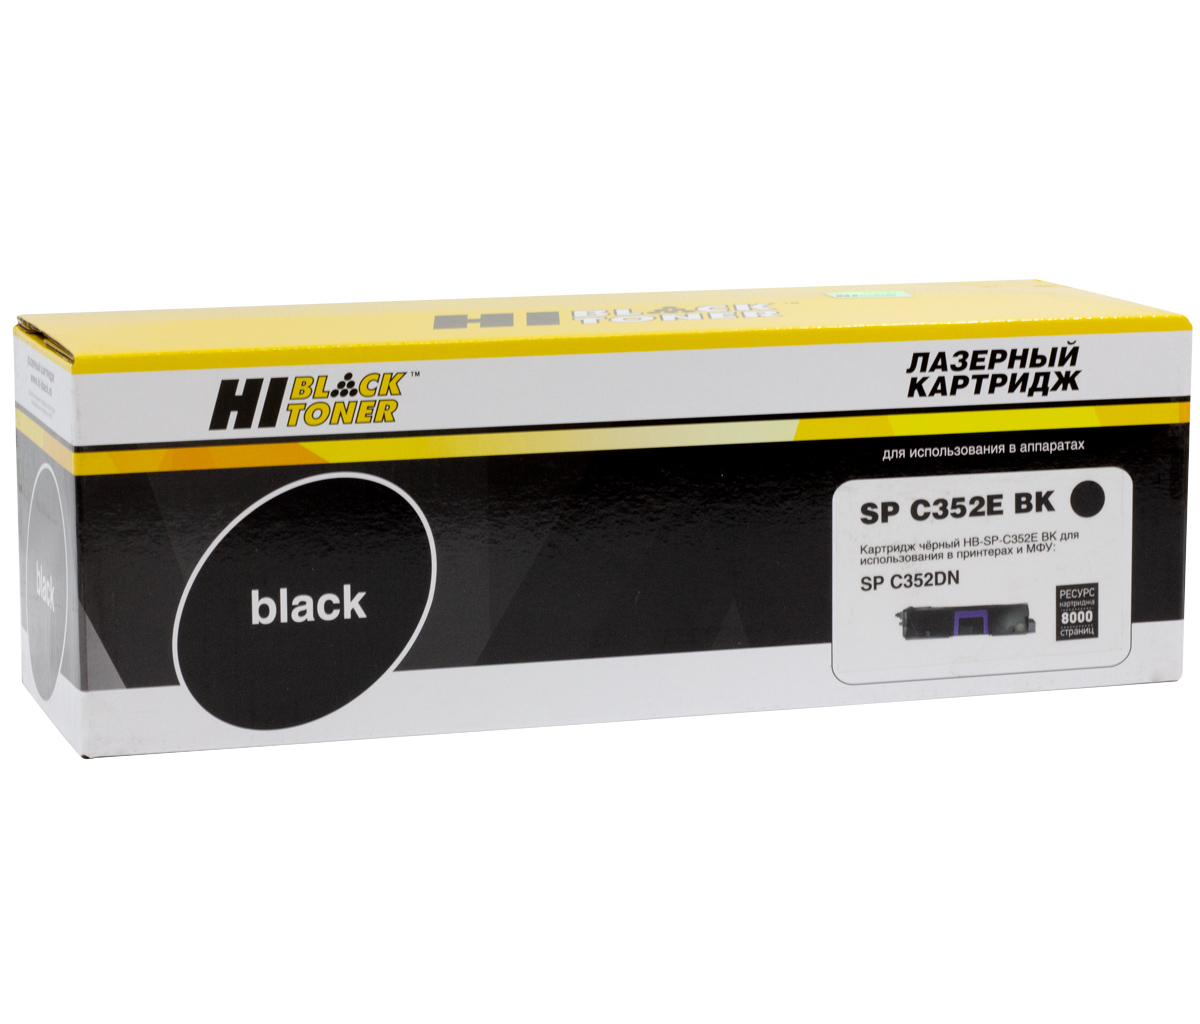 Тонер-картридж Hi-Black (HB-SP-C352E Bk) для Ricoh Aficio SP-C352DN, чёрный (8000 стр.)